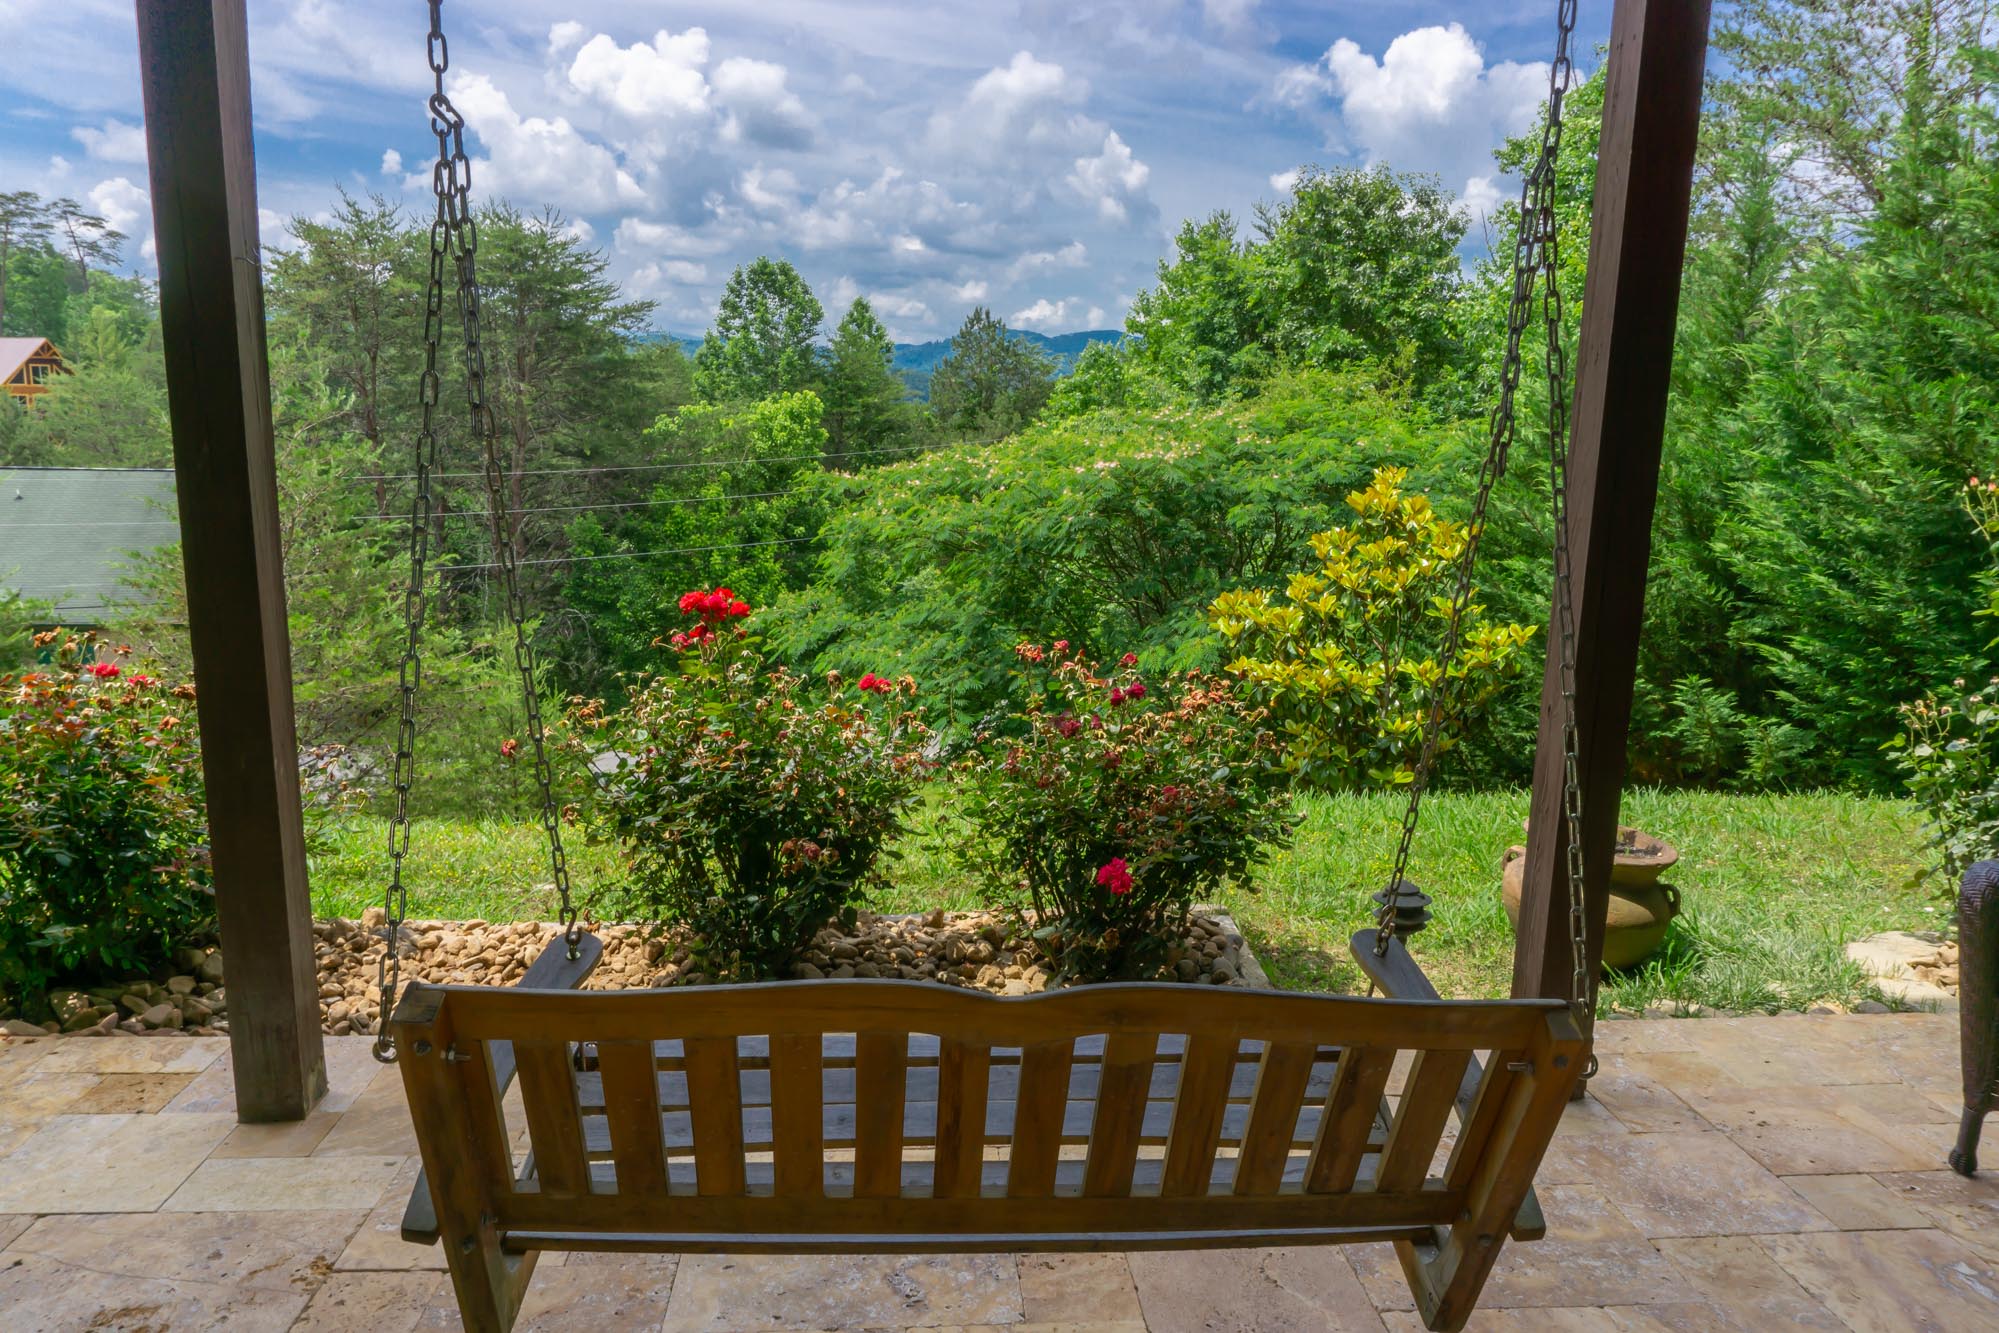 Smoky-Mountain-Splendor-patio-swing-view